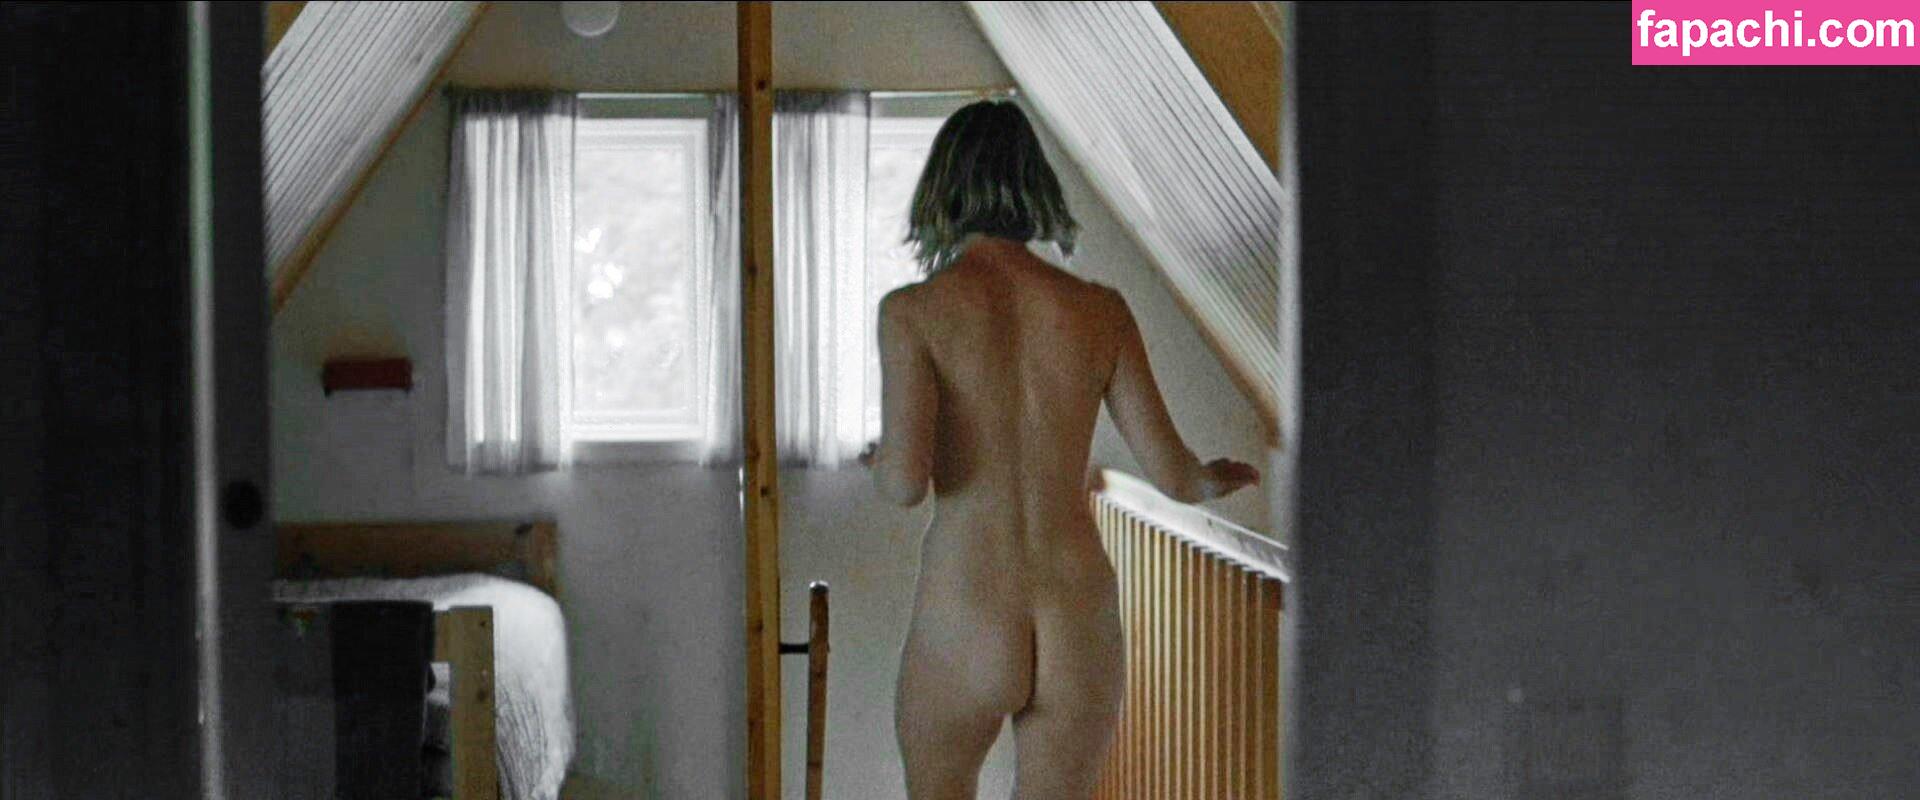 Mia Wasikowska / mia_wasikowska_ leaked nude photo #0016 from OnlyFans/Patreon